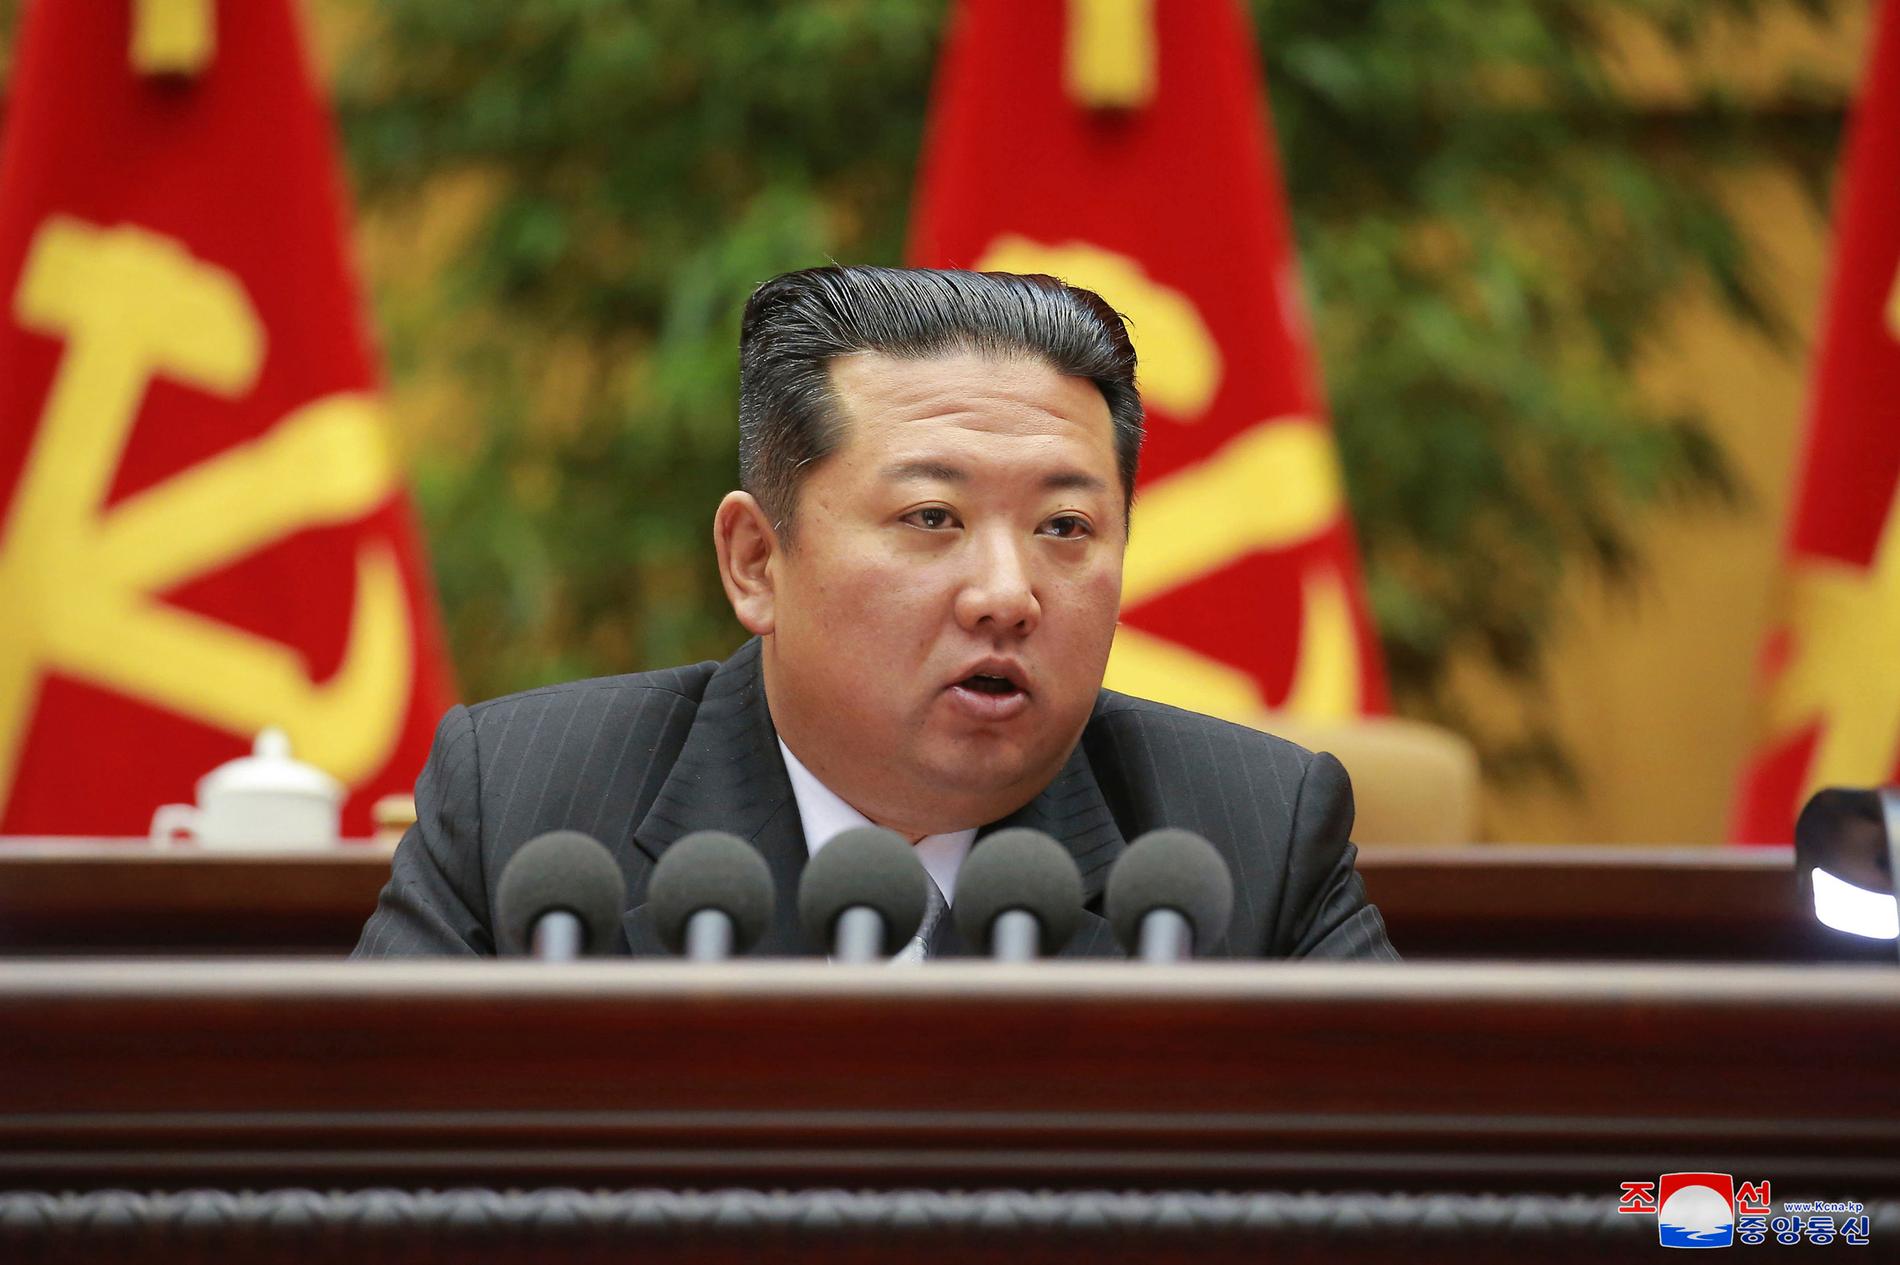 Nordkoreas ledare Kim Jong-un.